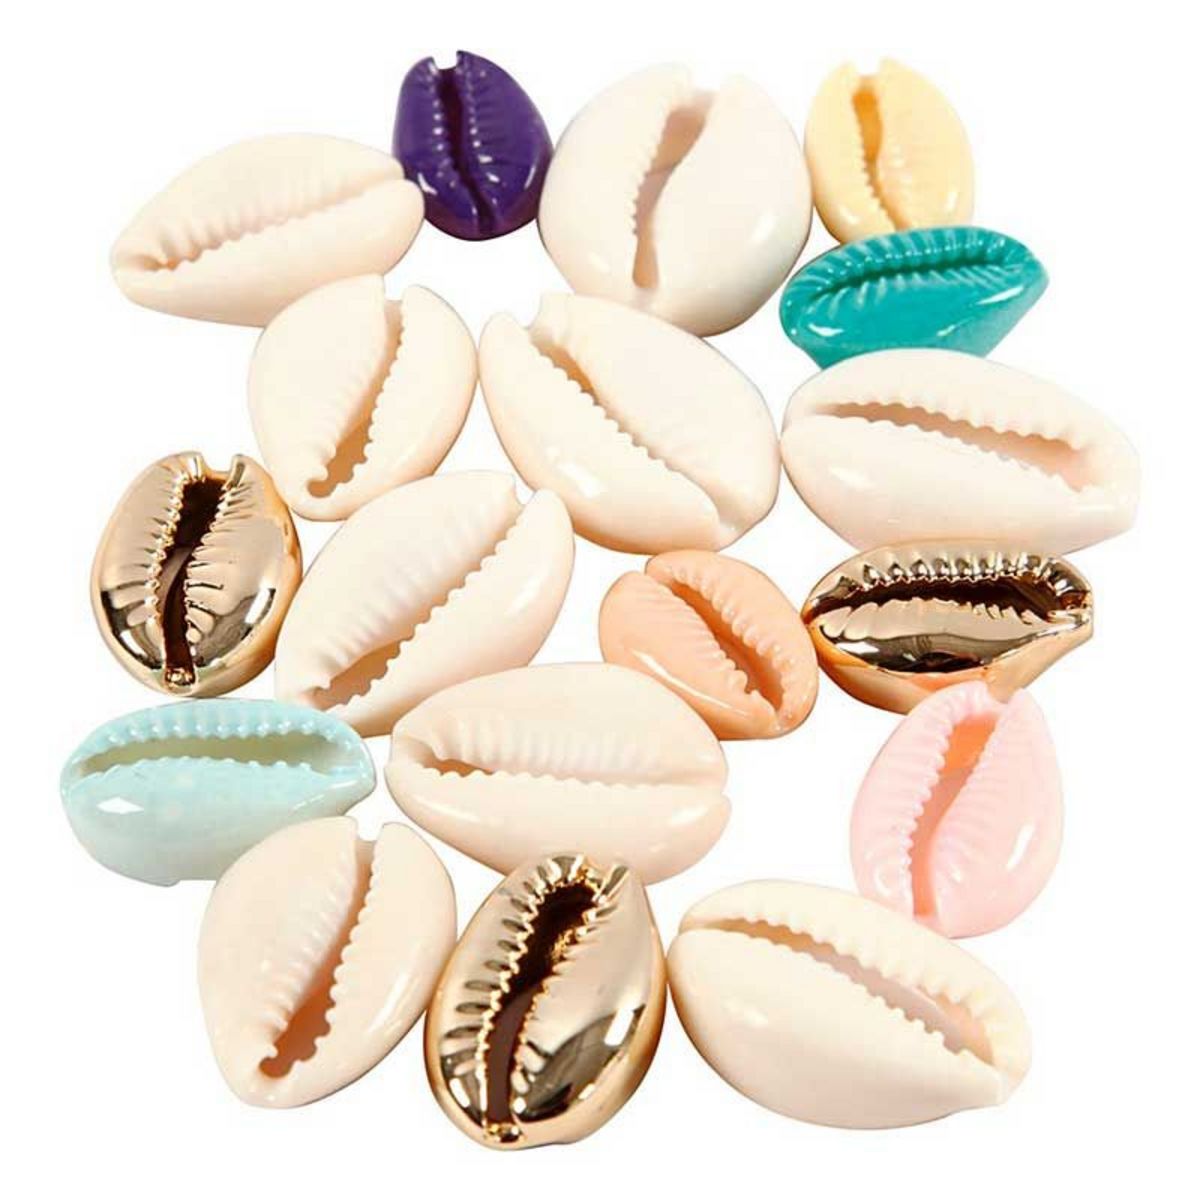  75 perles coquillage 20 mm - Multicolore